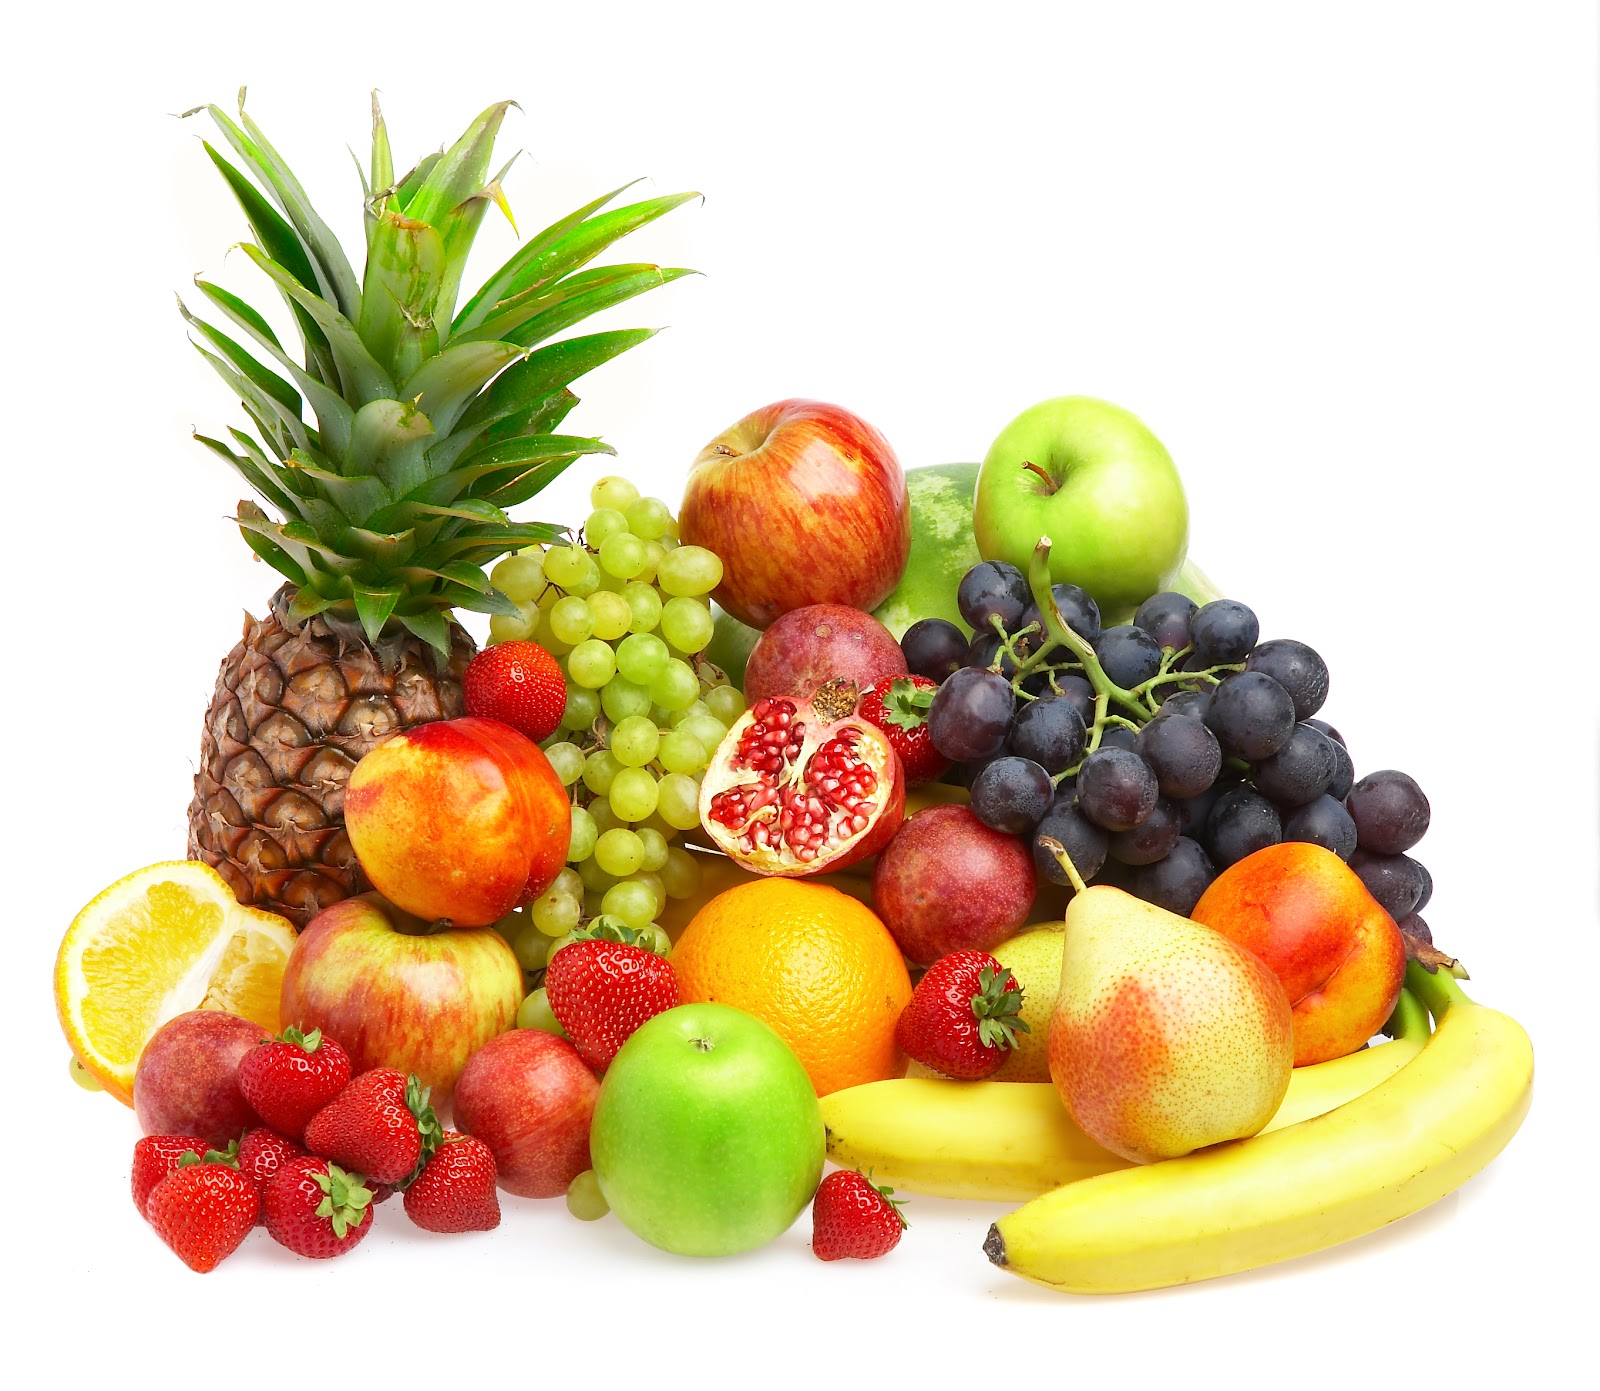 Frutas pouco conhecidas têm alto poder anti-inflamatório e antioxidante